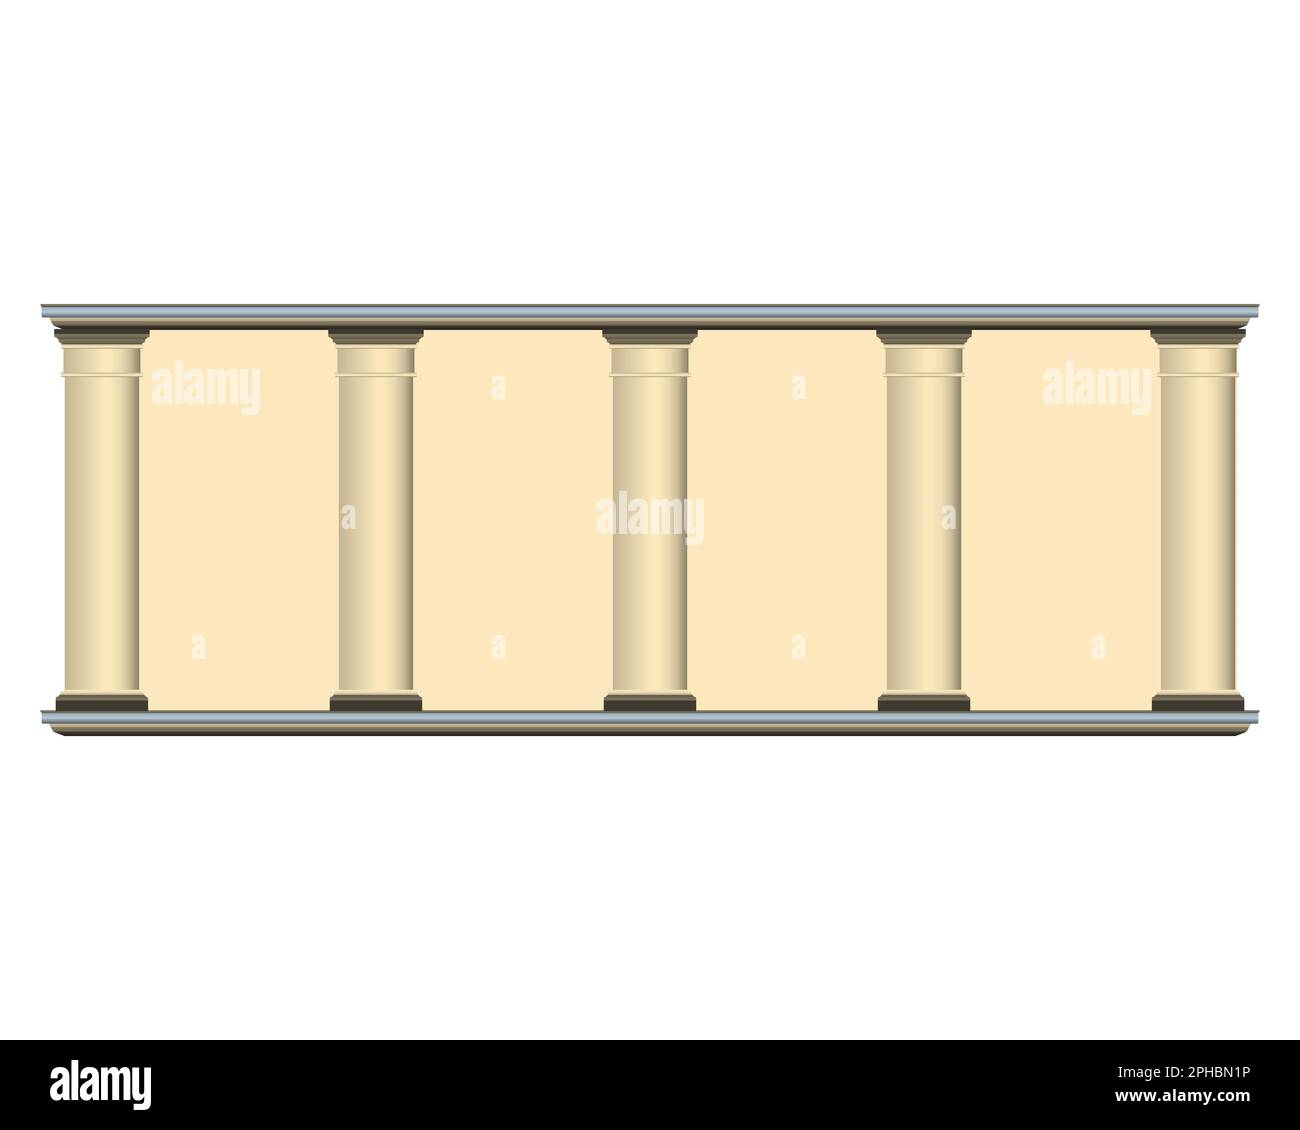 Parete a colonna beige in stile realistico. Facciata di un vecchio edificio. Illustrazione vettoriale colorata isolata su sfondo bianco. Illustrazione Vettoriale